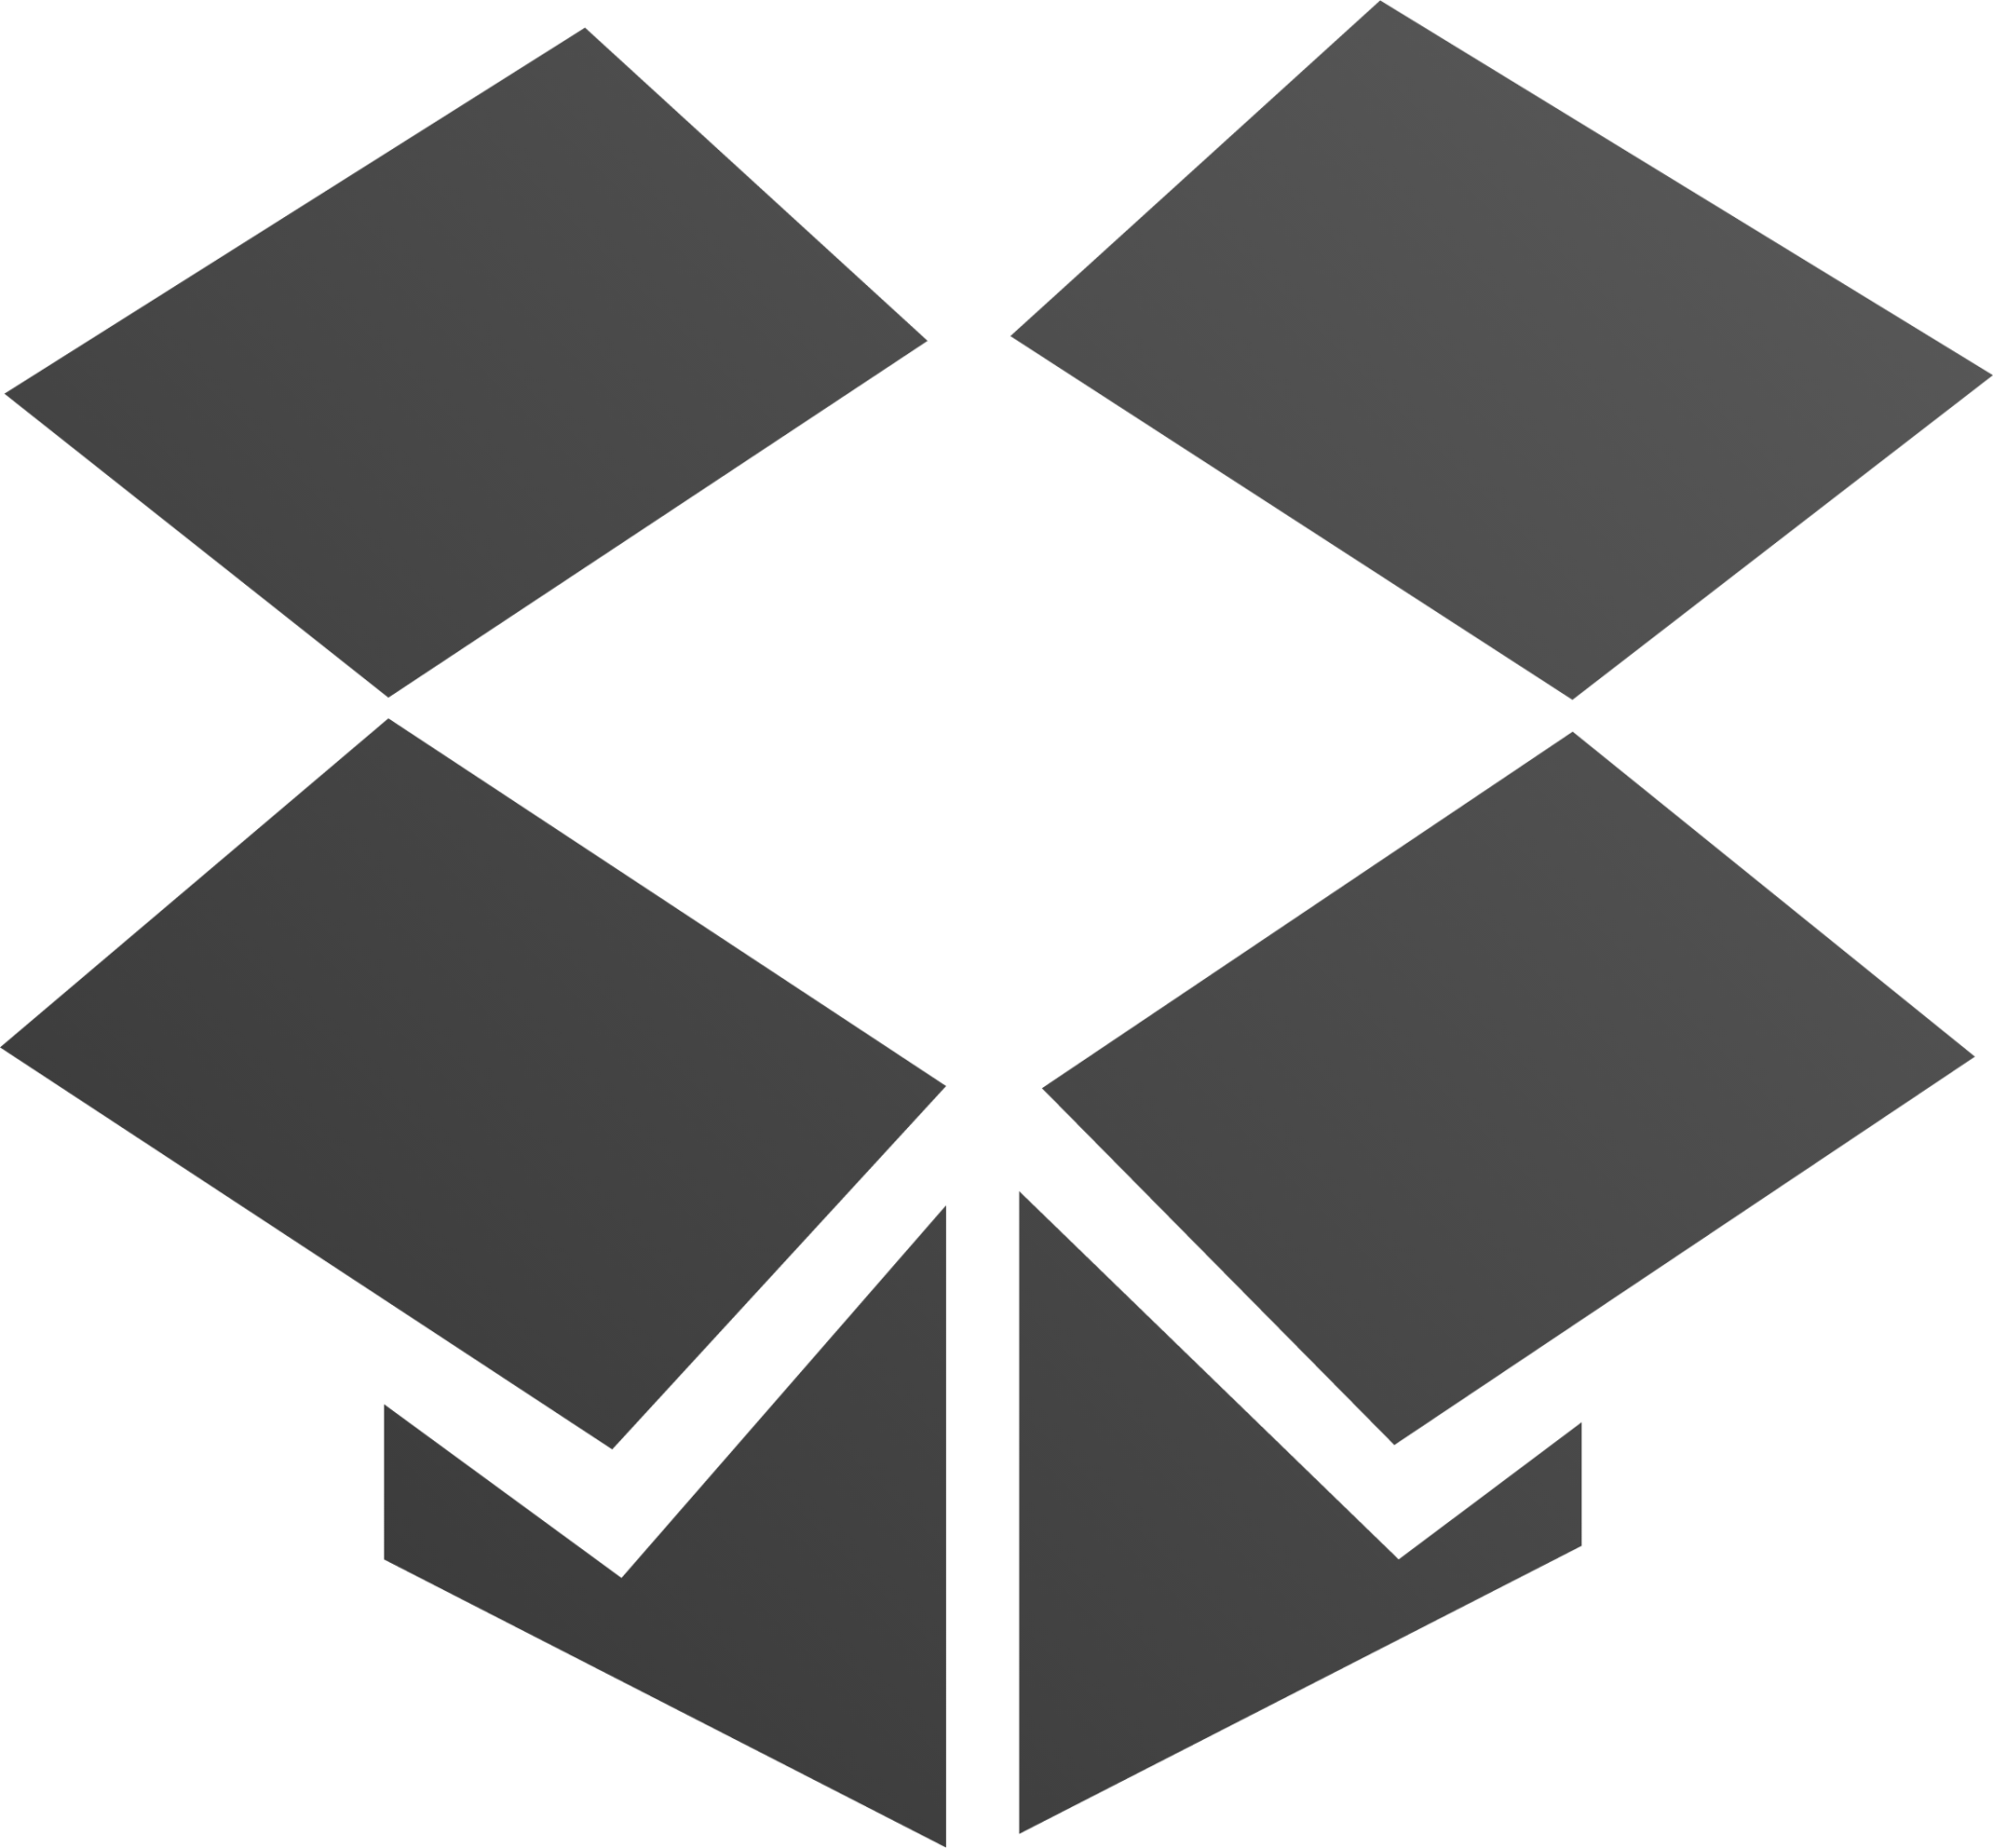 dropboxstatus logo icon